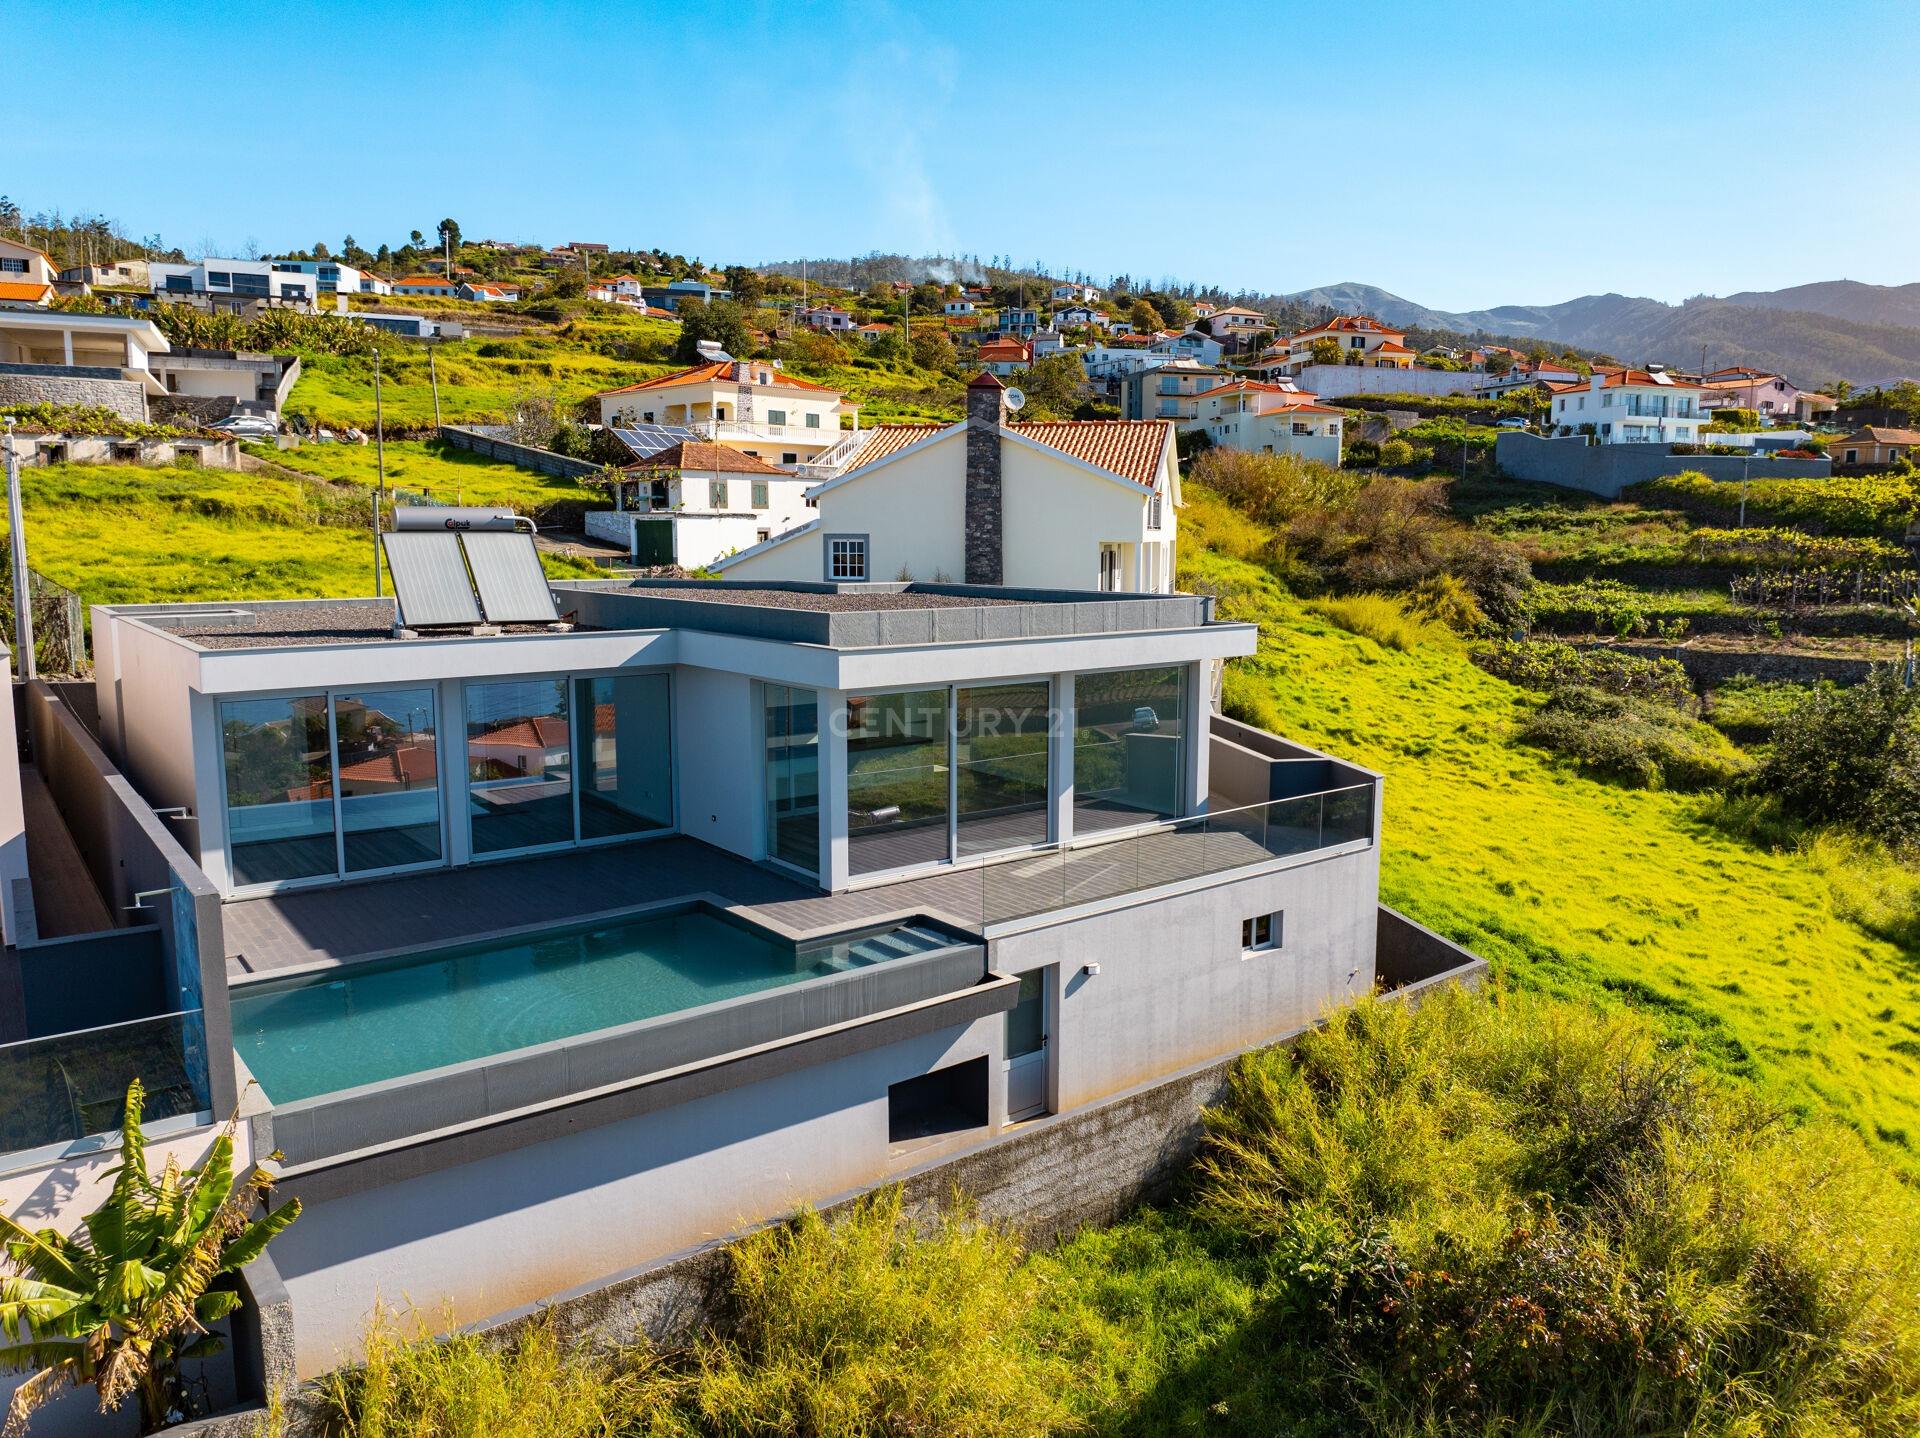 Nieuw gelijkvloers huis met drie slaapkamers - zwembad en prachtig uitzicht op zee - Calheta